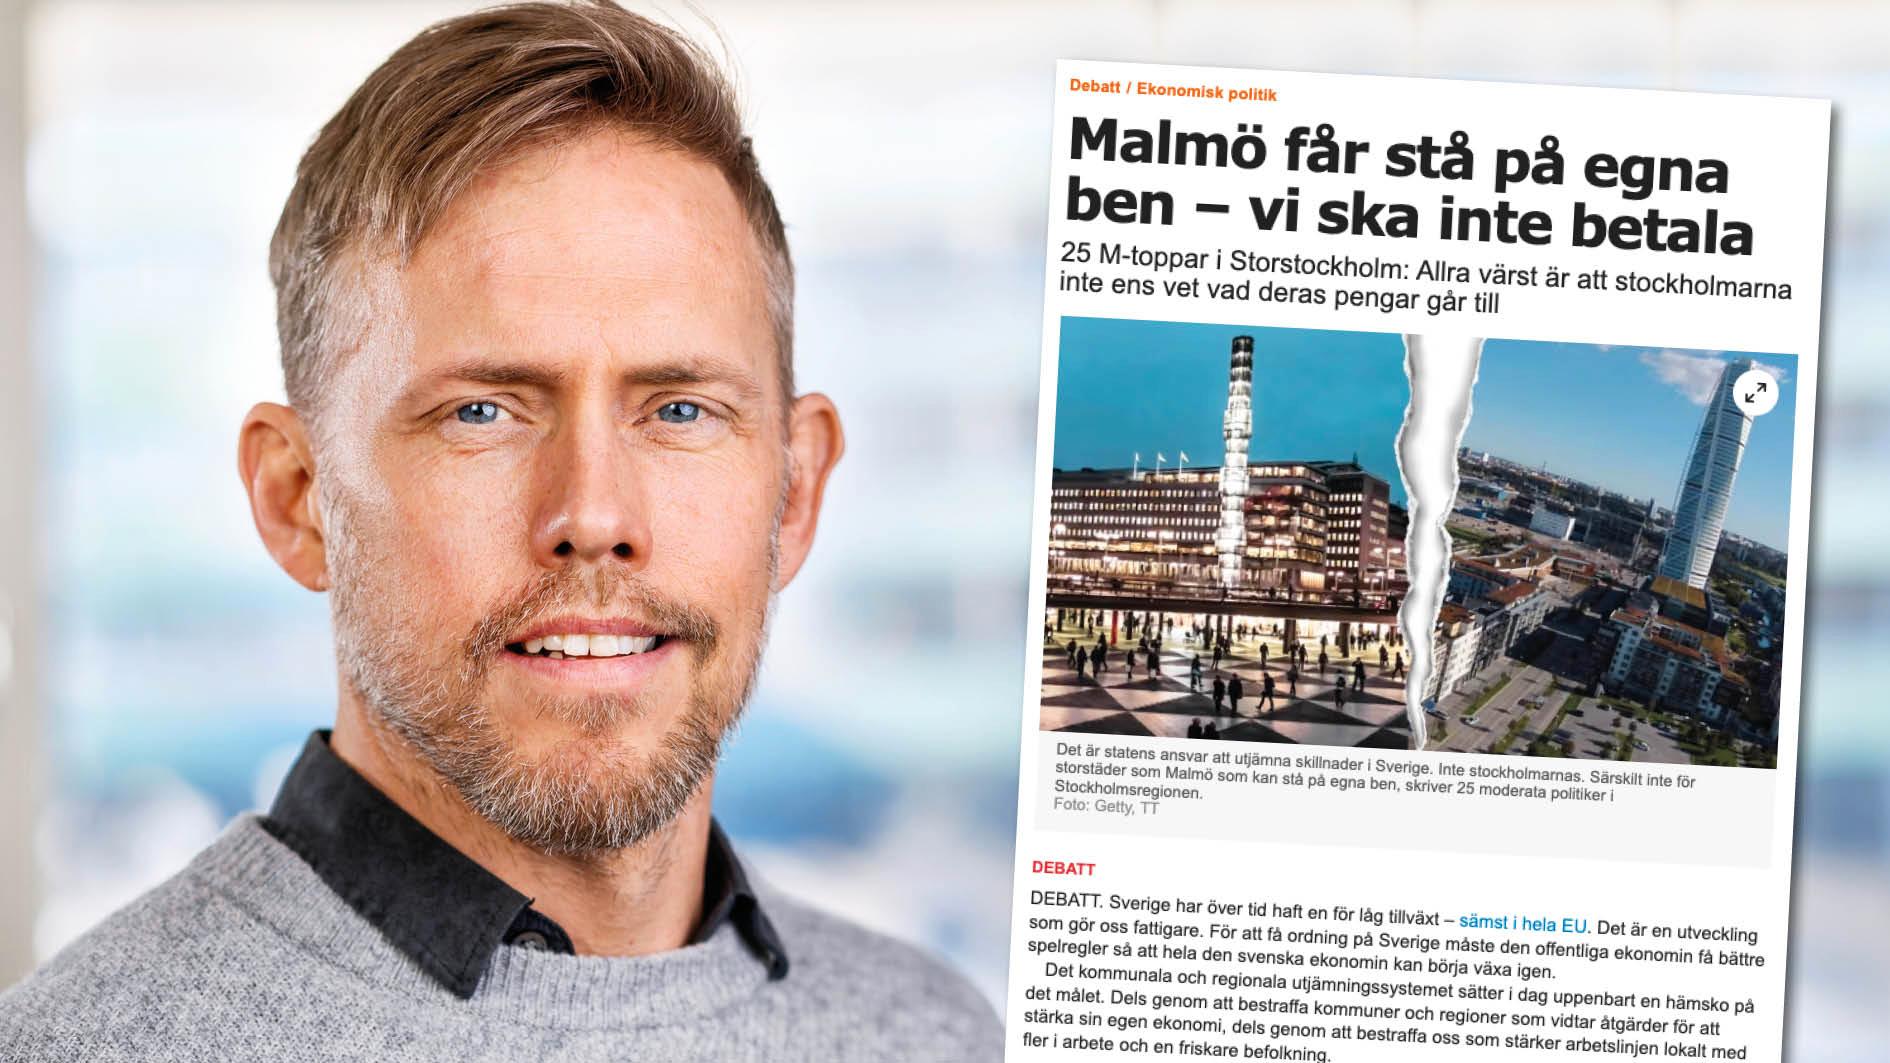 Om Malmö ska bli fullt kompenserat för förändringar i skatteunderlaget borde staden få 24 procent mer i utjämningsbidrag. Replik från Martin Nordin, docent i nationalekonomi.